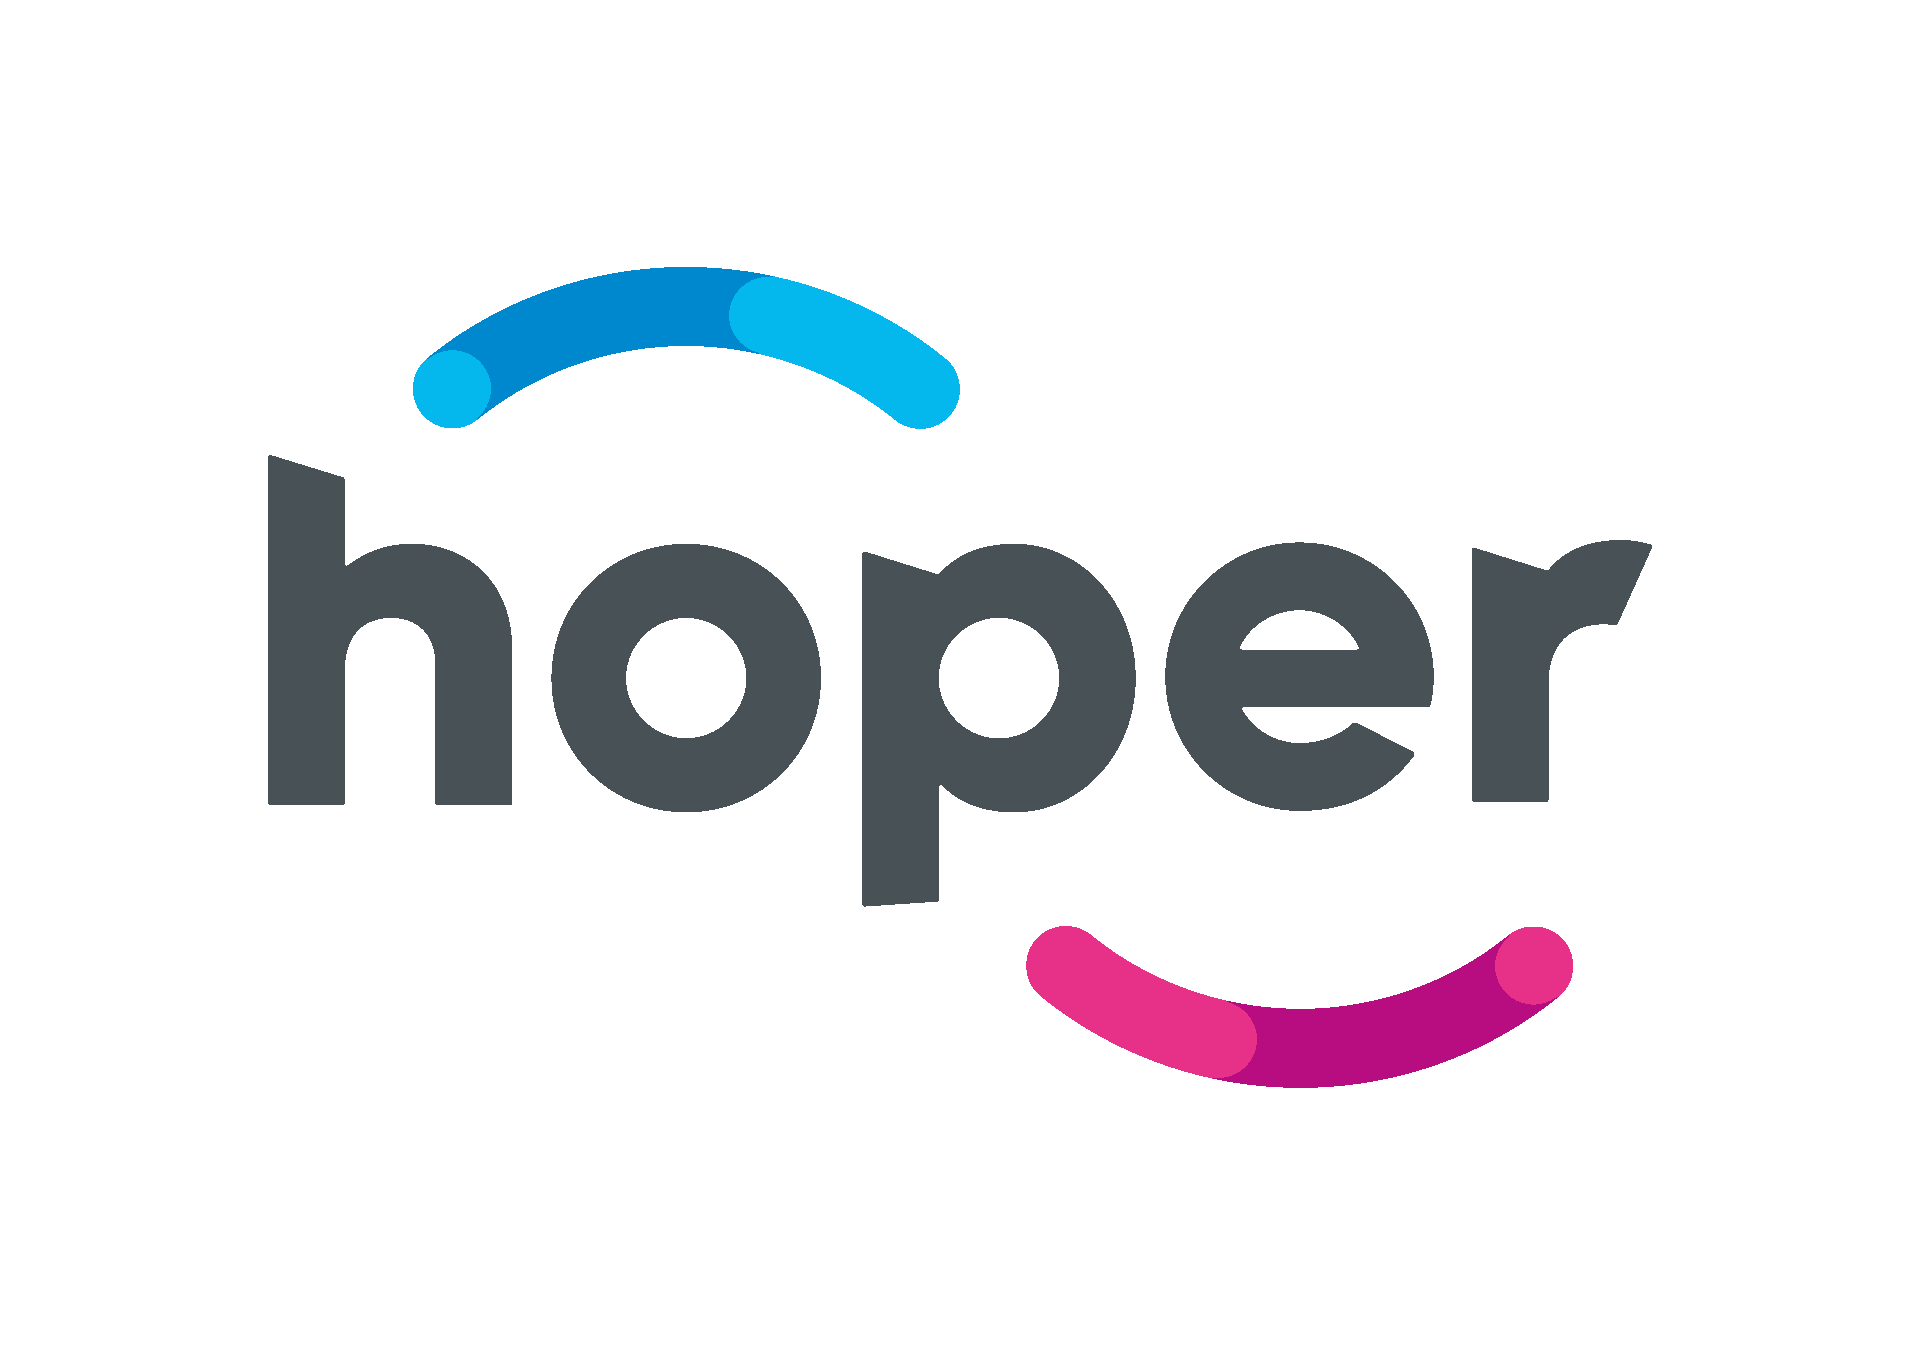 Hoper - logo